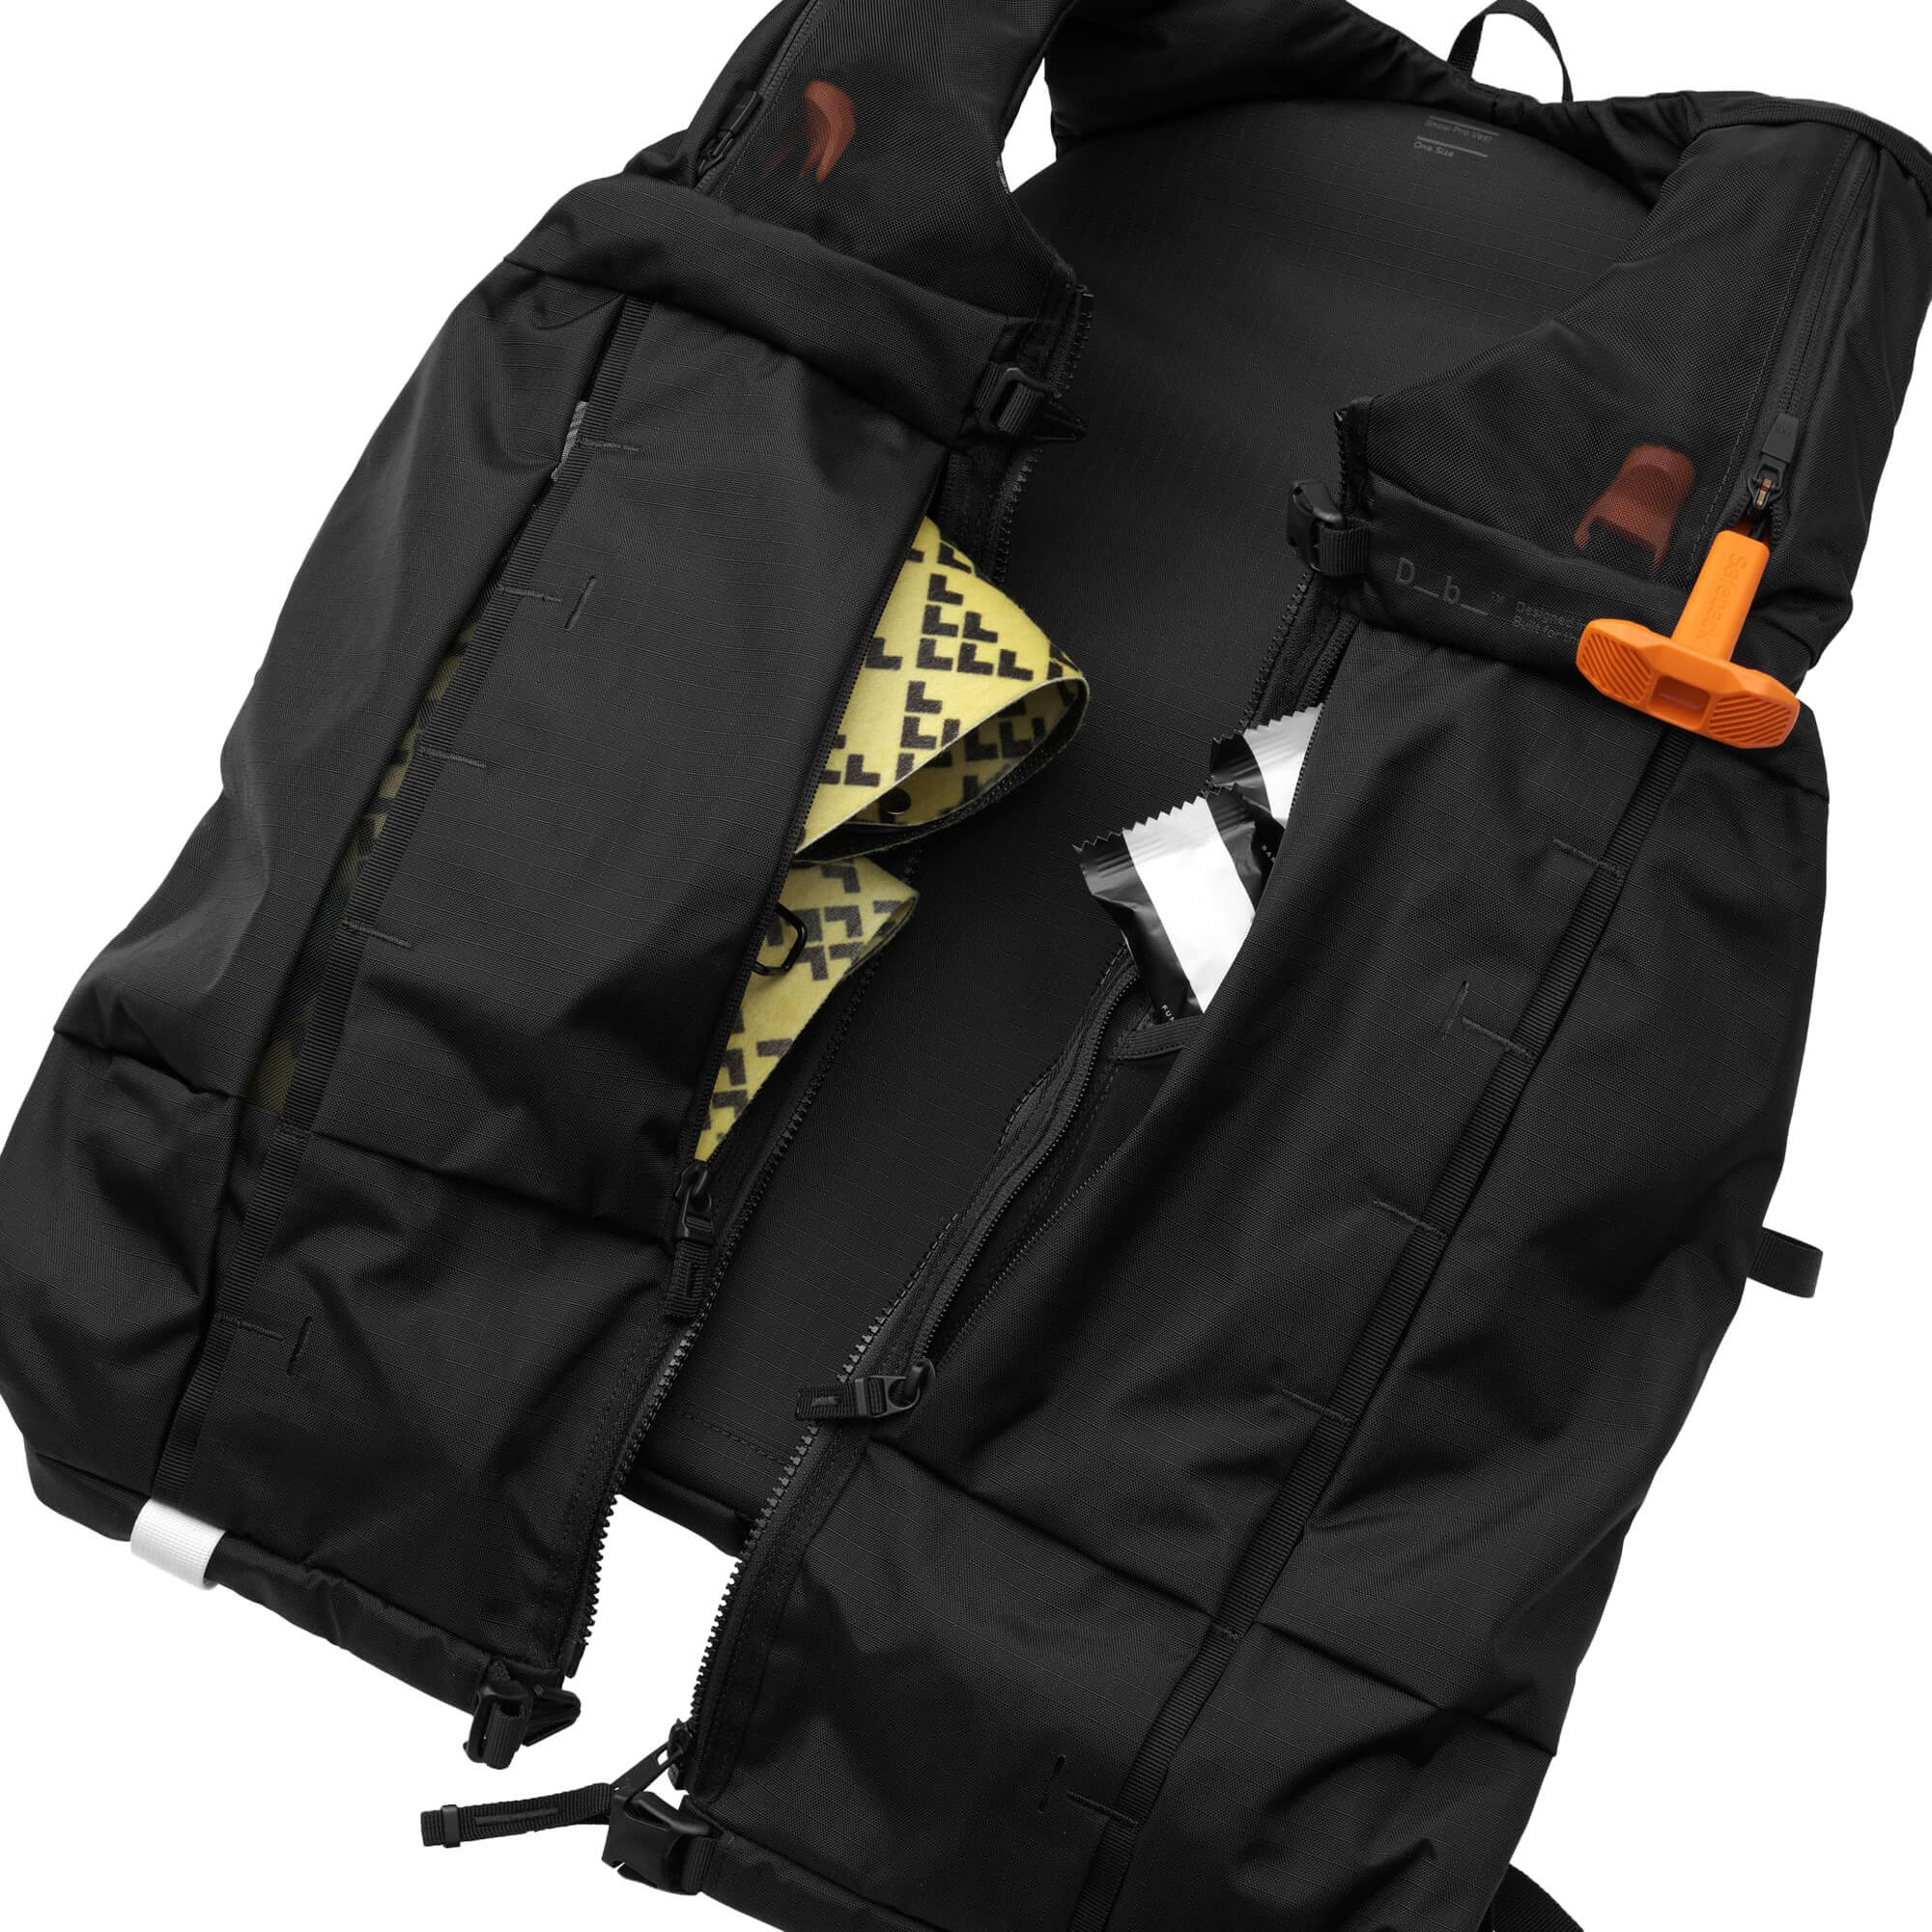 Db Snow Pro Vest 8L x Safeback Vest/Pack